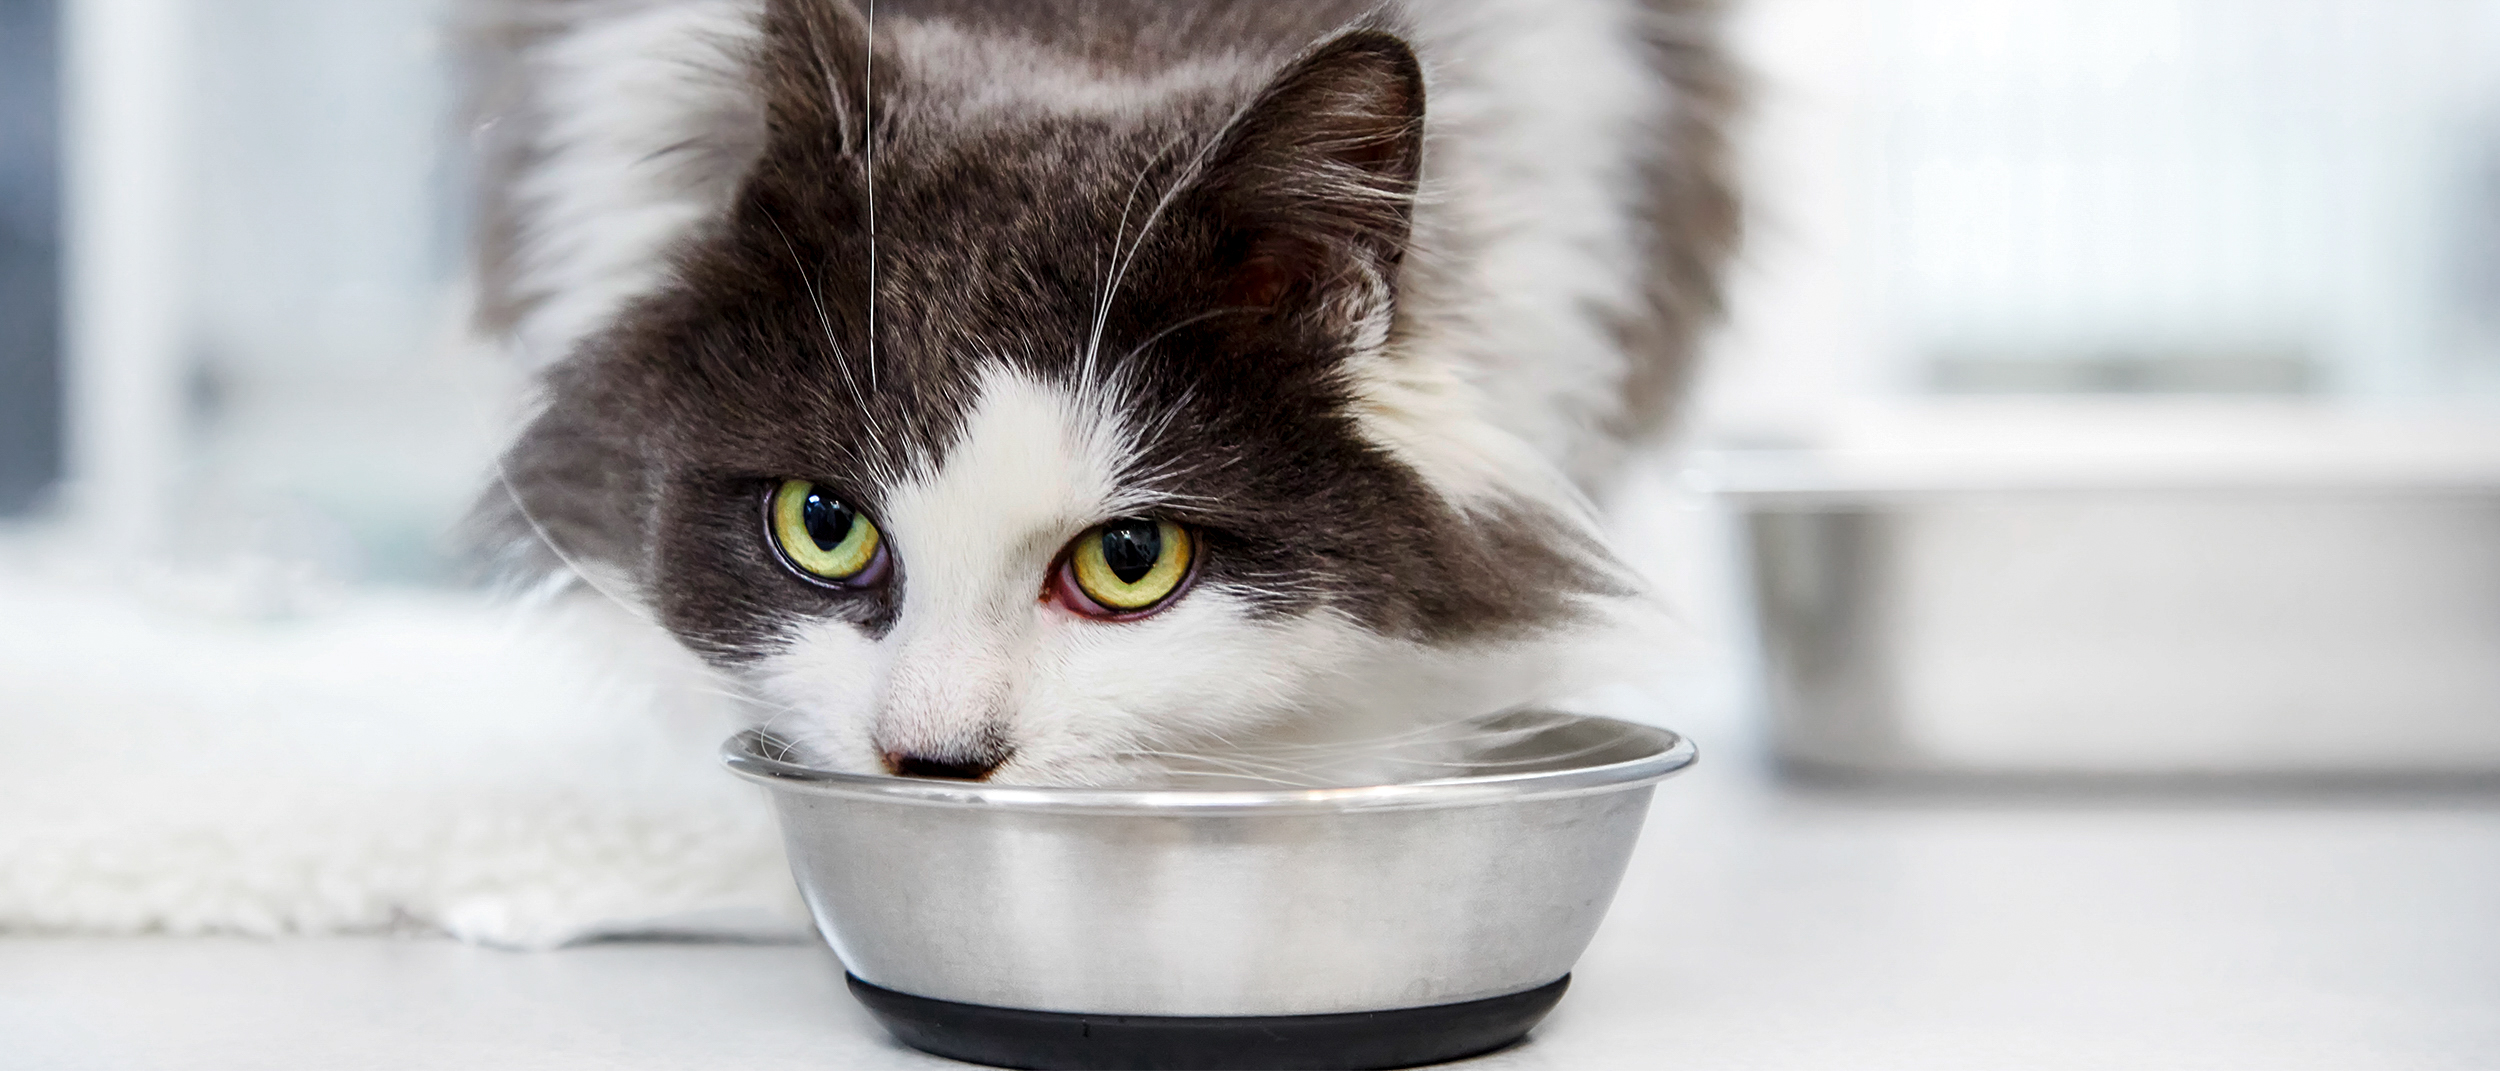 Gato adulto parado en el consultorio veterinario comiendo de un pote plateado.